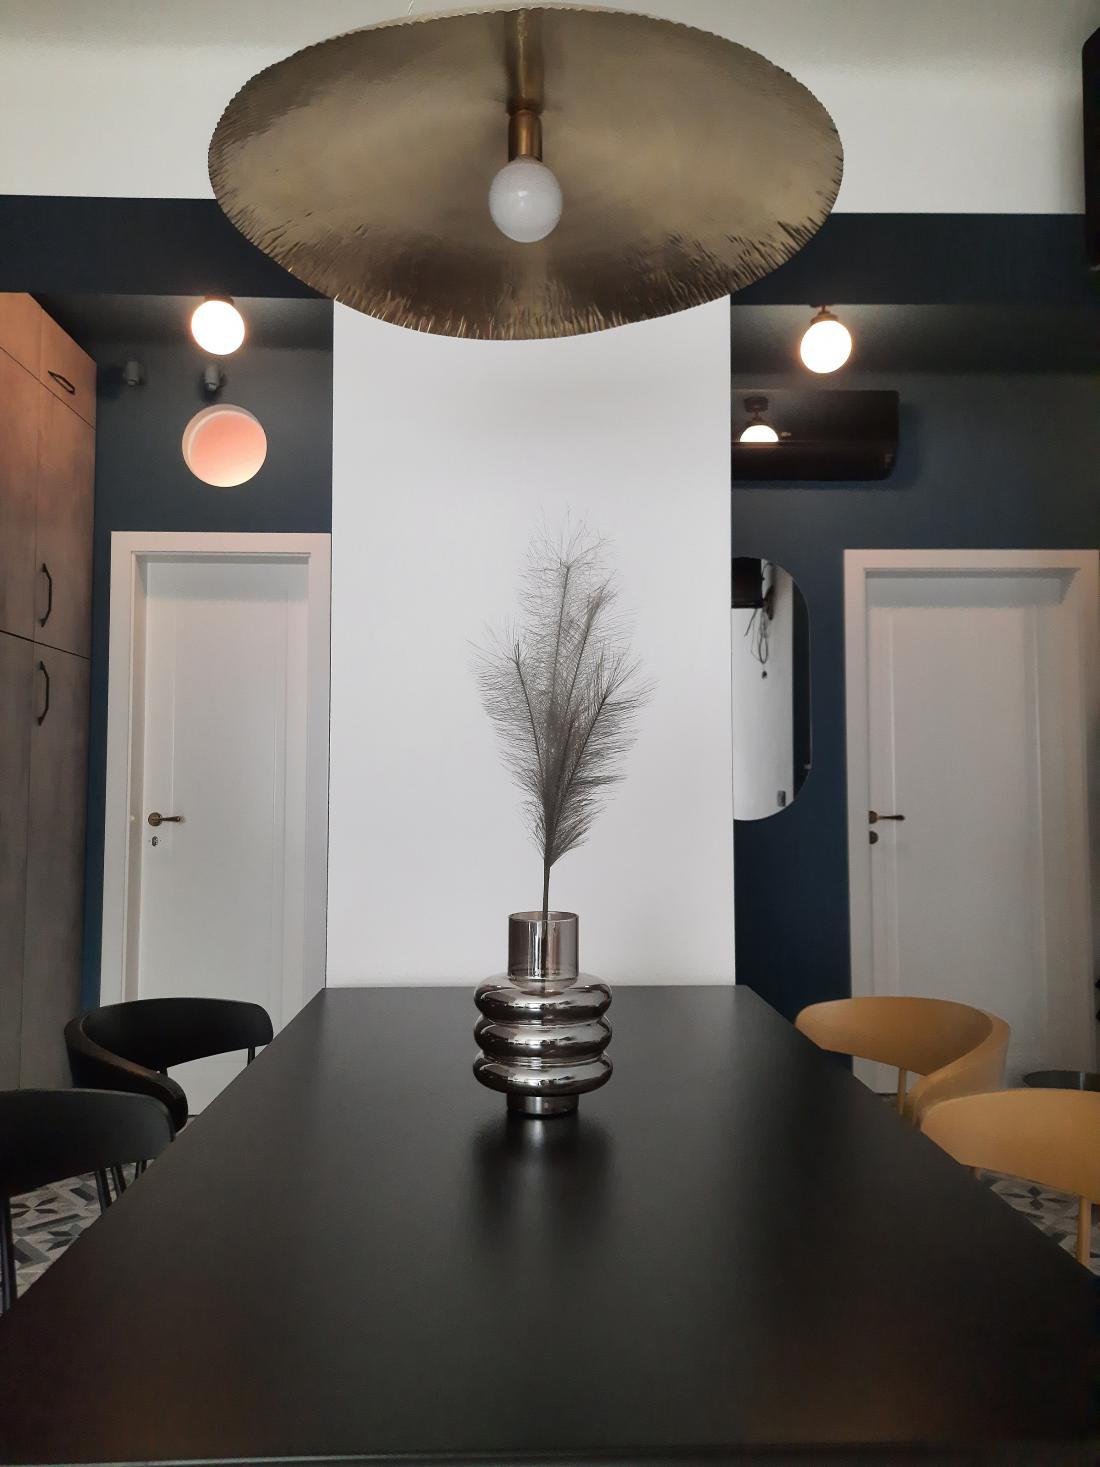 Dva črna in dva rumena stola ter luč nad mizo, ki je eden Manjinih najljubših kosov opreme v stanovanju.